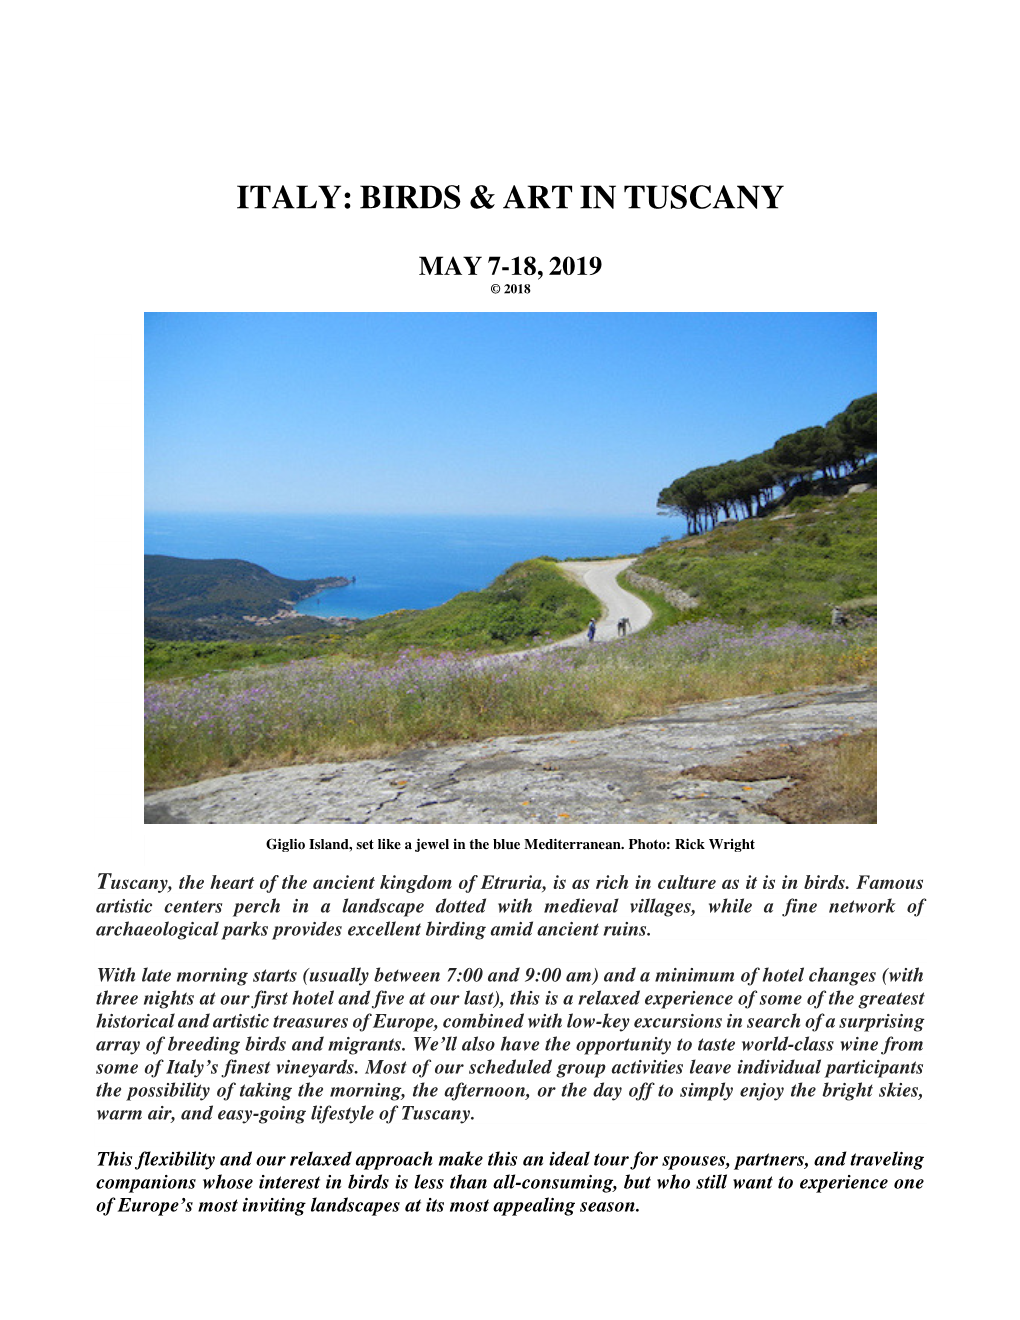 Italy: Birds & Art in Tuscany